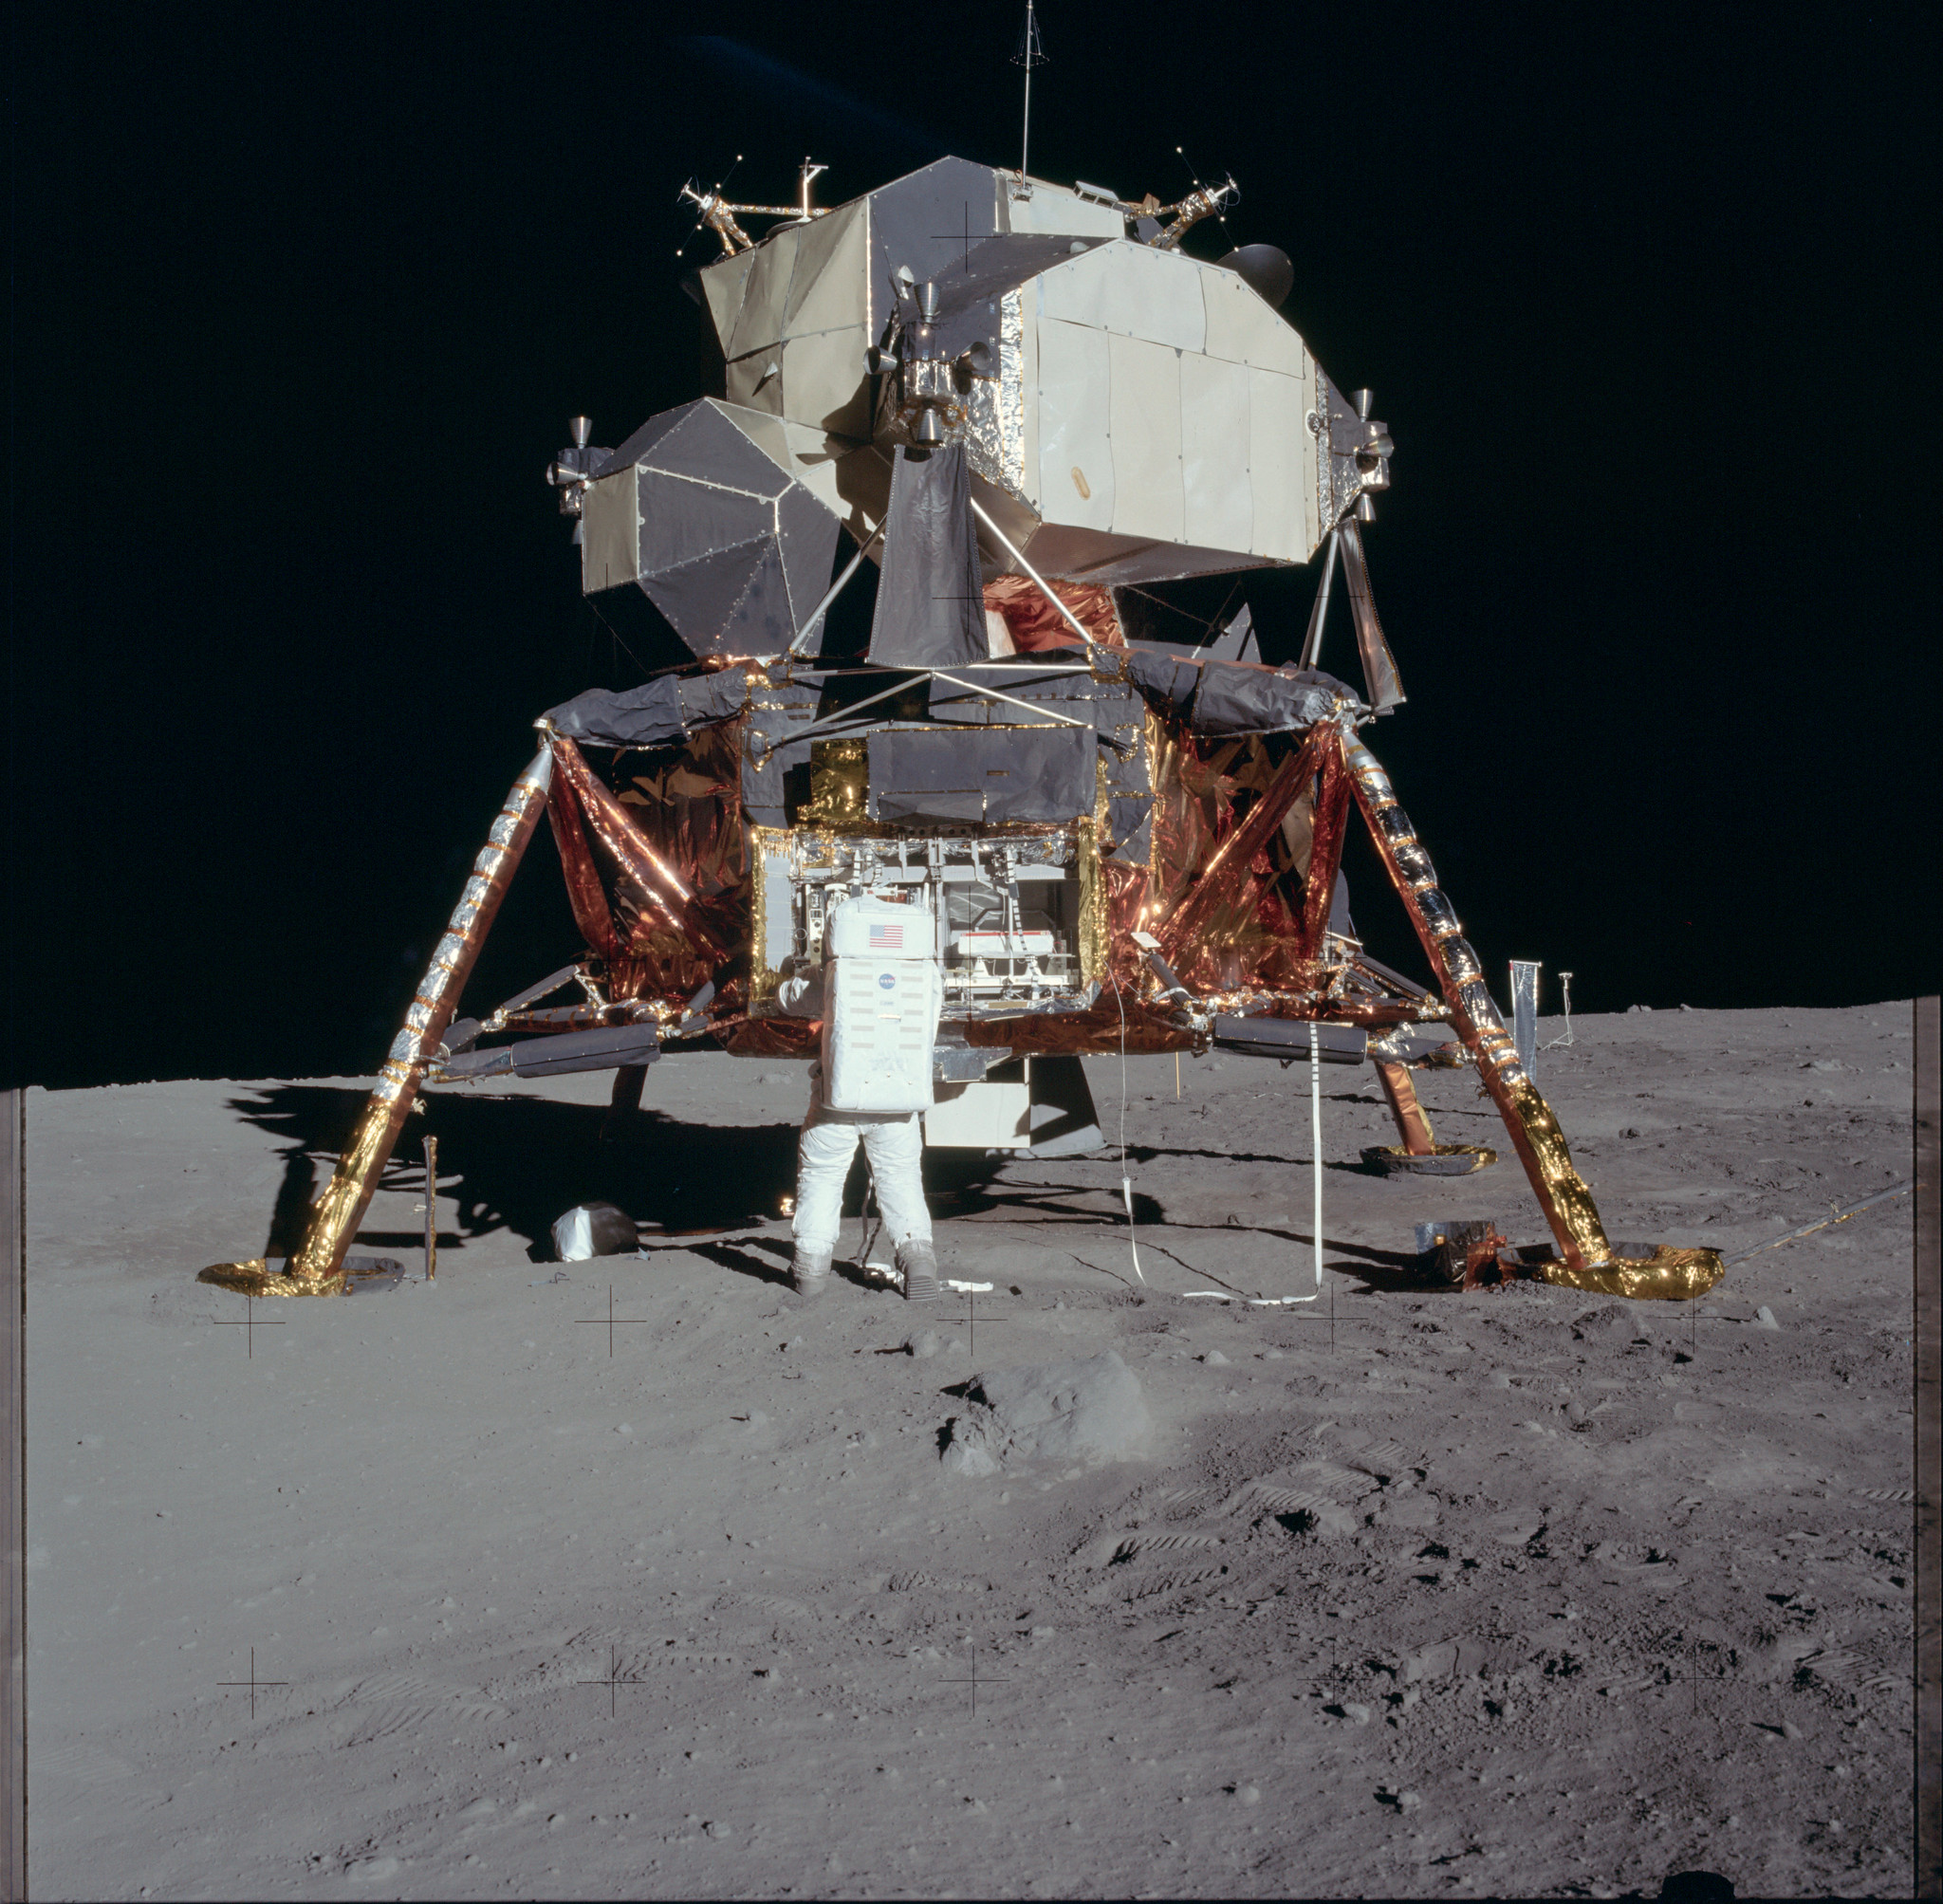 Apollo moon lander